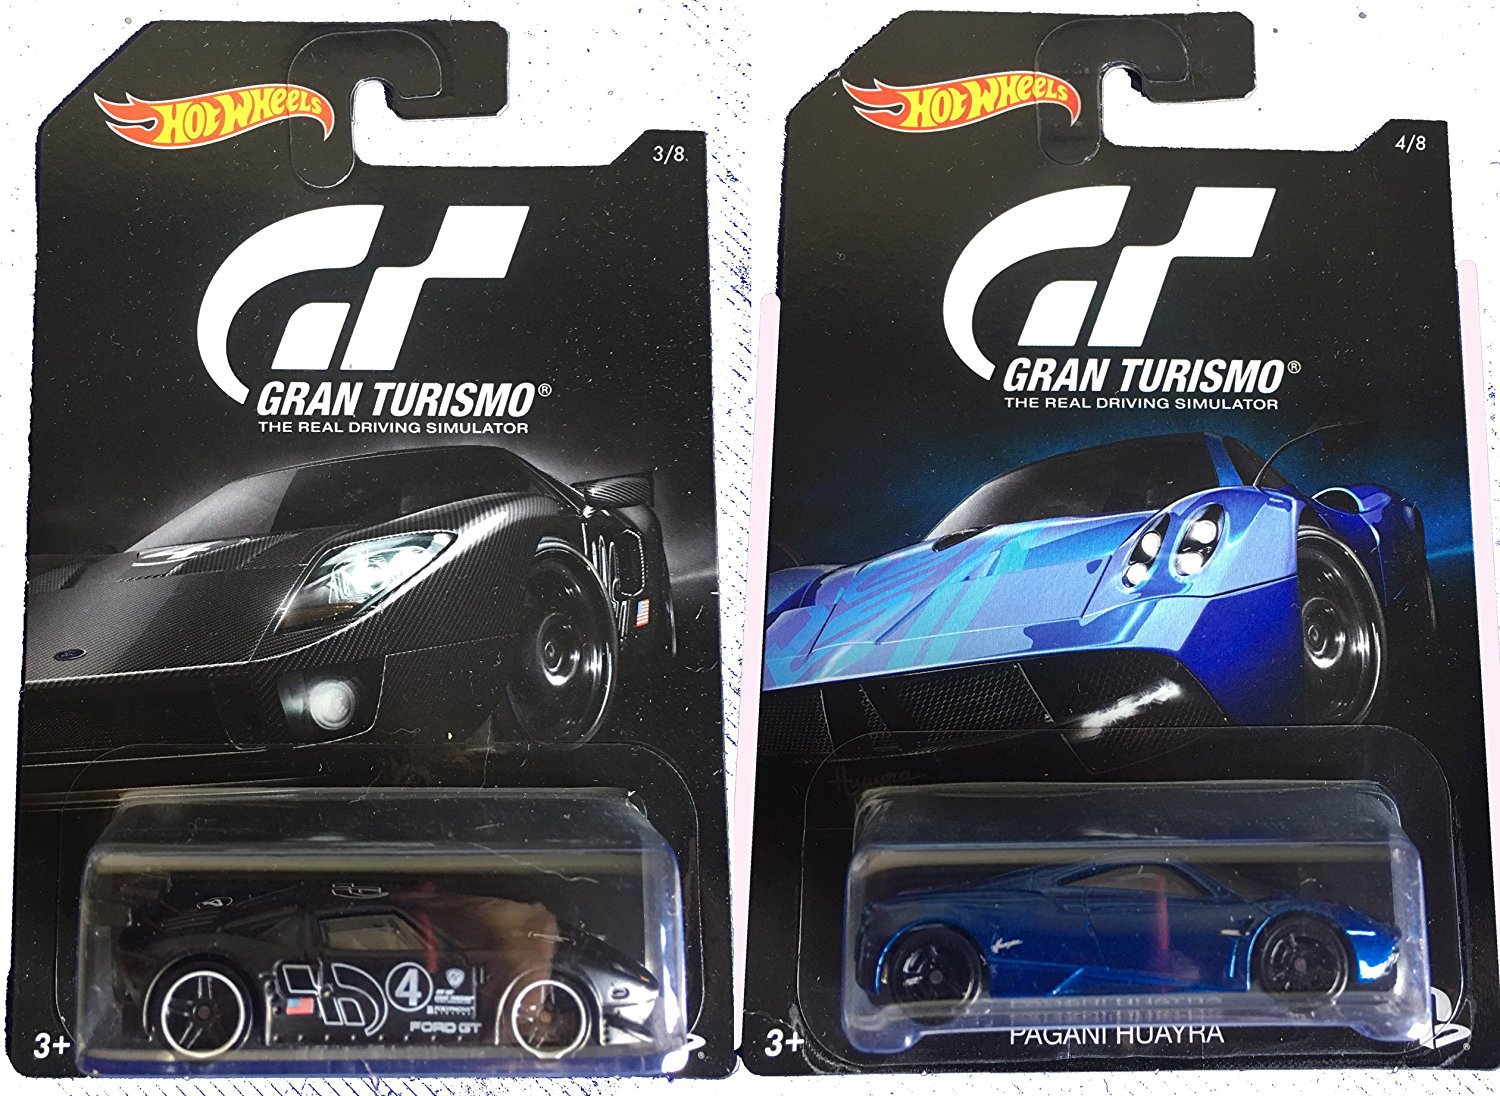 Hot Wheels Ford GT 2016 Gran Turismo Comparison! 